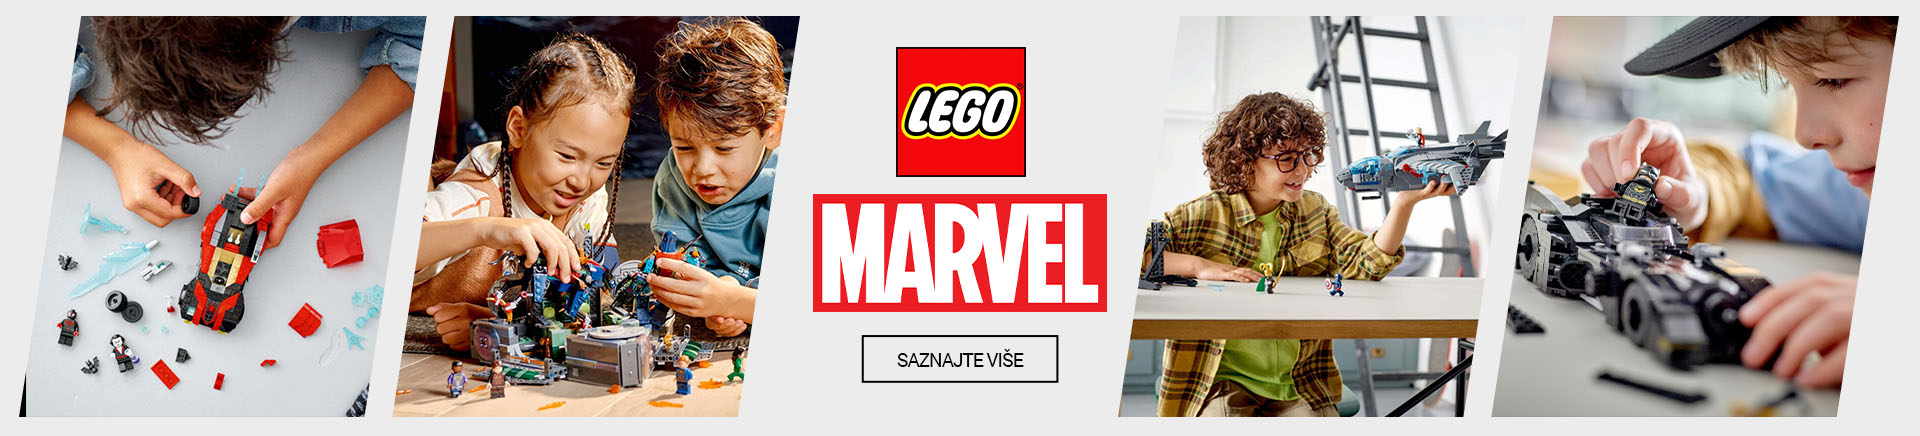 ME Lego MARVEL MOBILE 380 X 436.jpg